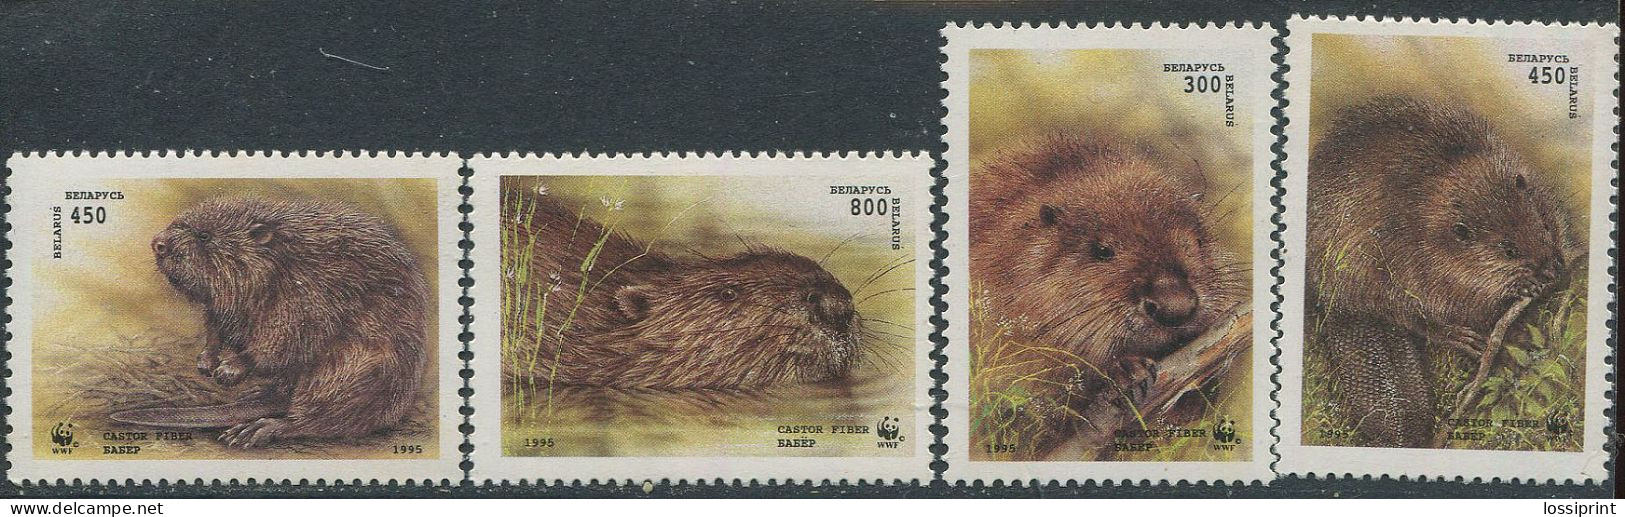 Belarus:Unused Stamps Serie WWF, Rodent, Castor Fiber, 1995, MNH - Belarus